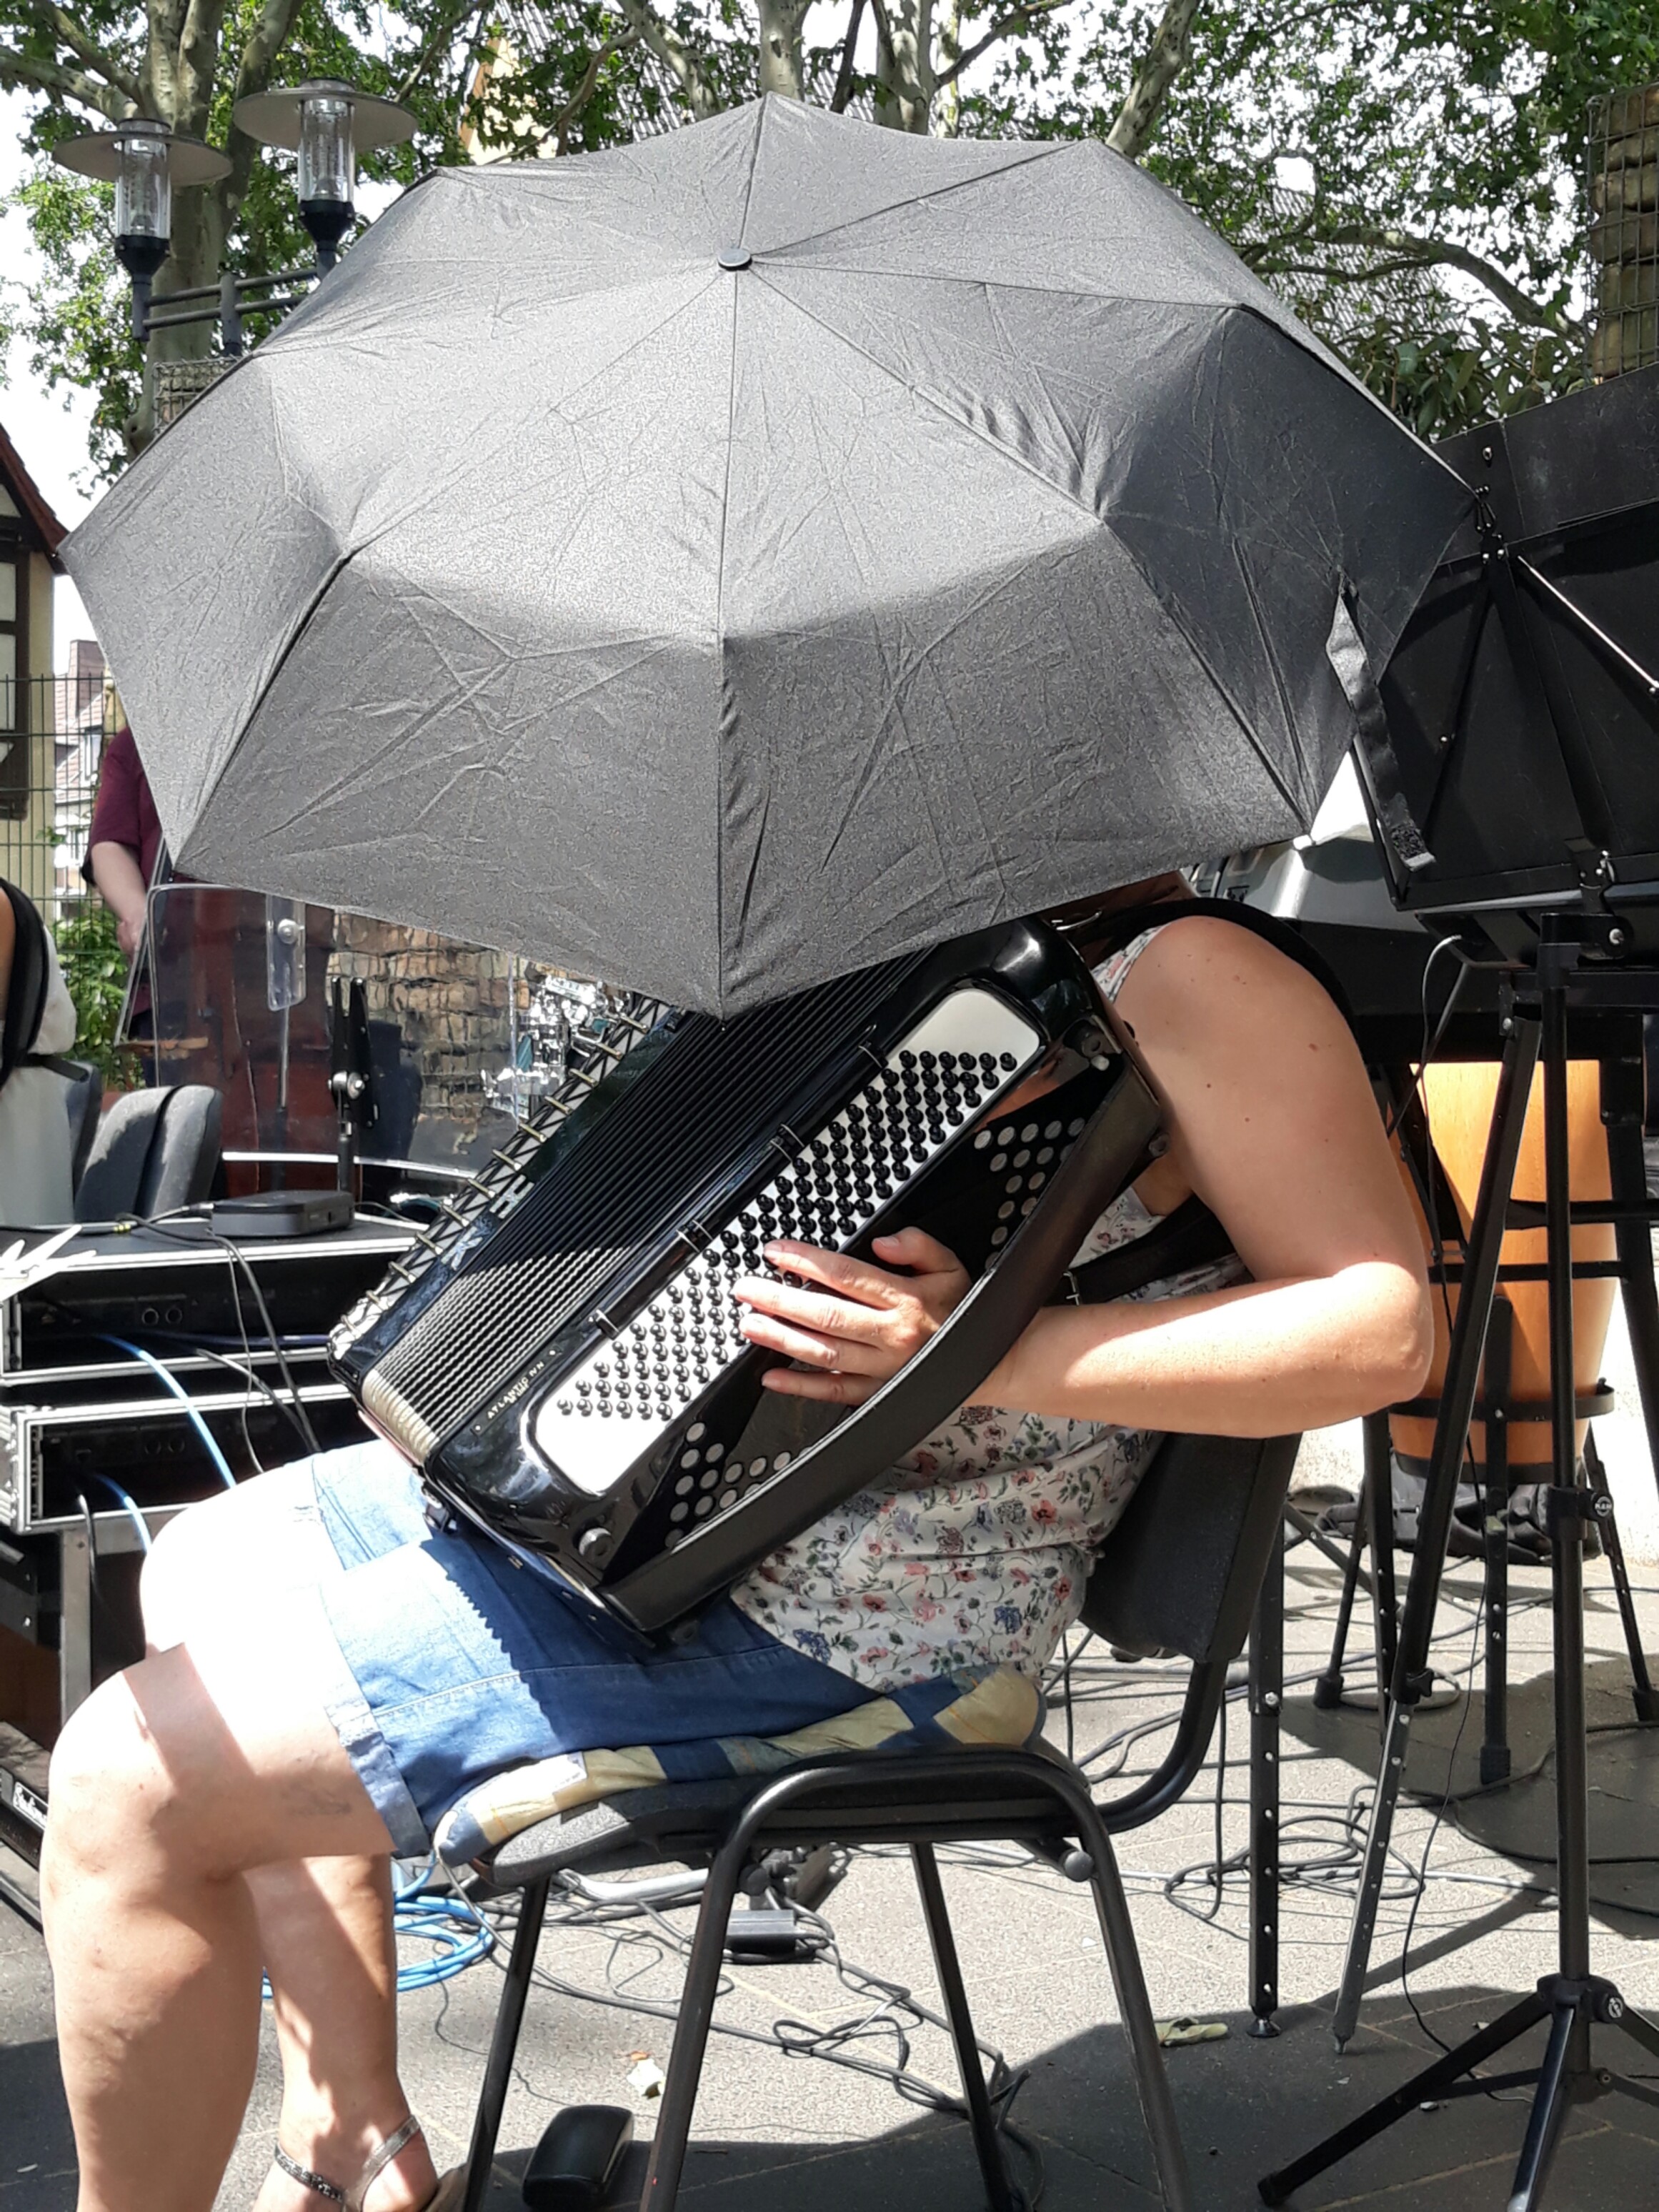 Dieses Akkordeon wurde mit einem Regenschirm vor der Sonne geschützt